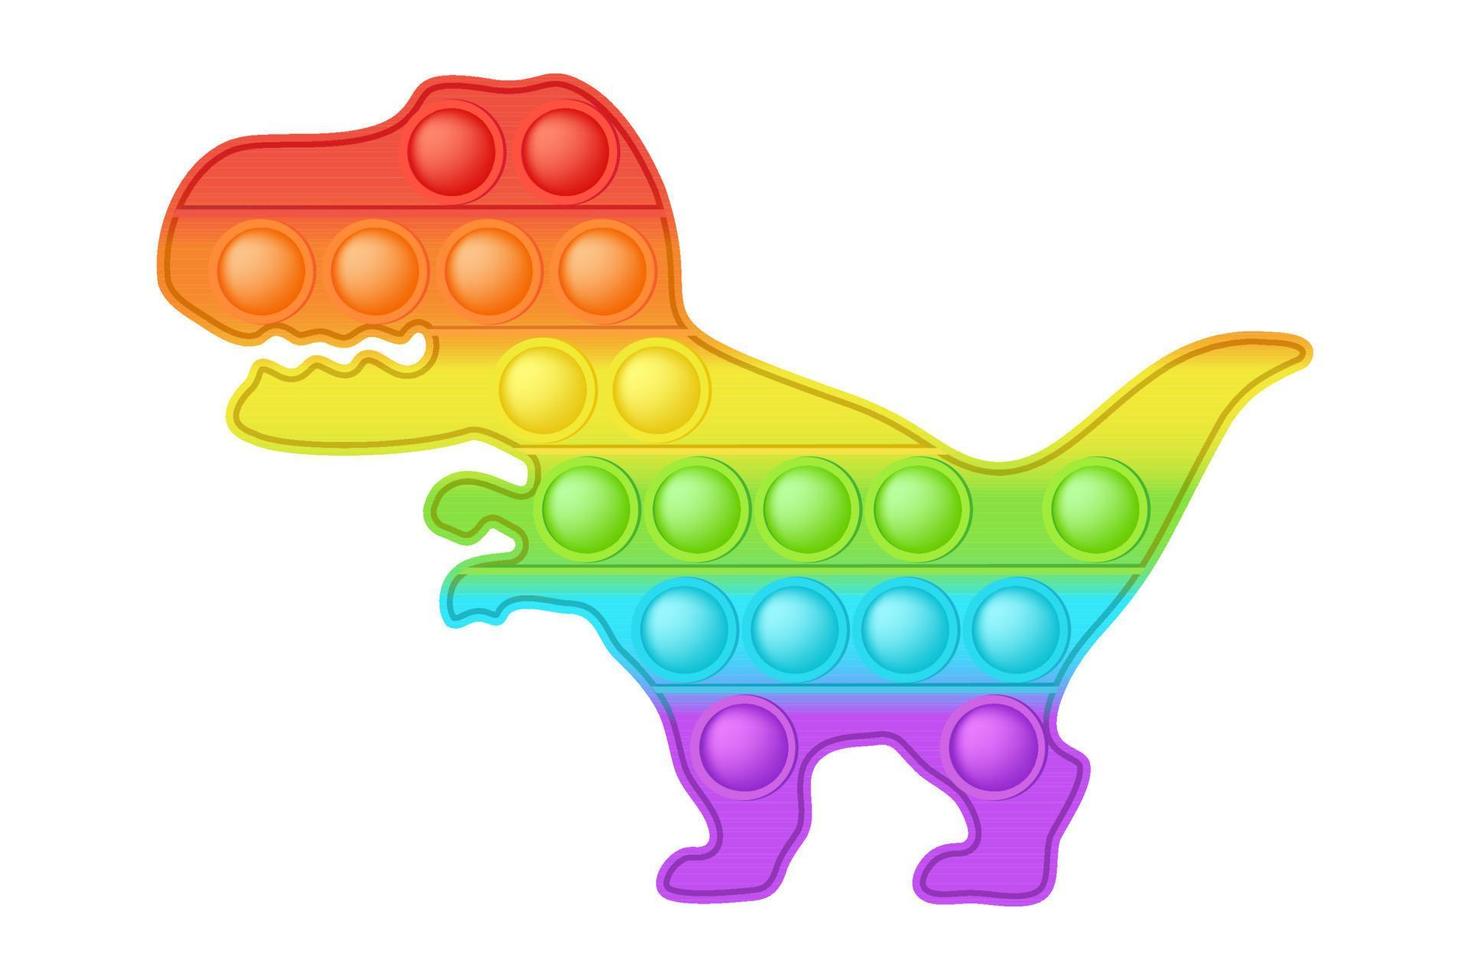 juguete que hace estallar juguete de silicona de dinosaurio arcoíris brillante para inquietos. adictivo juguete de desarrollo sensorial de burbujas para los dedos de los niños. ilustración vectorial aislada vector